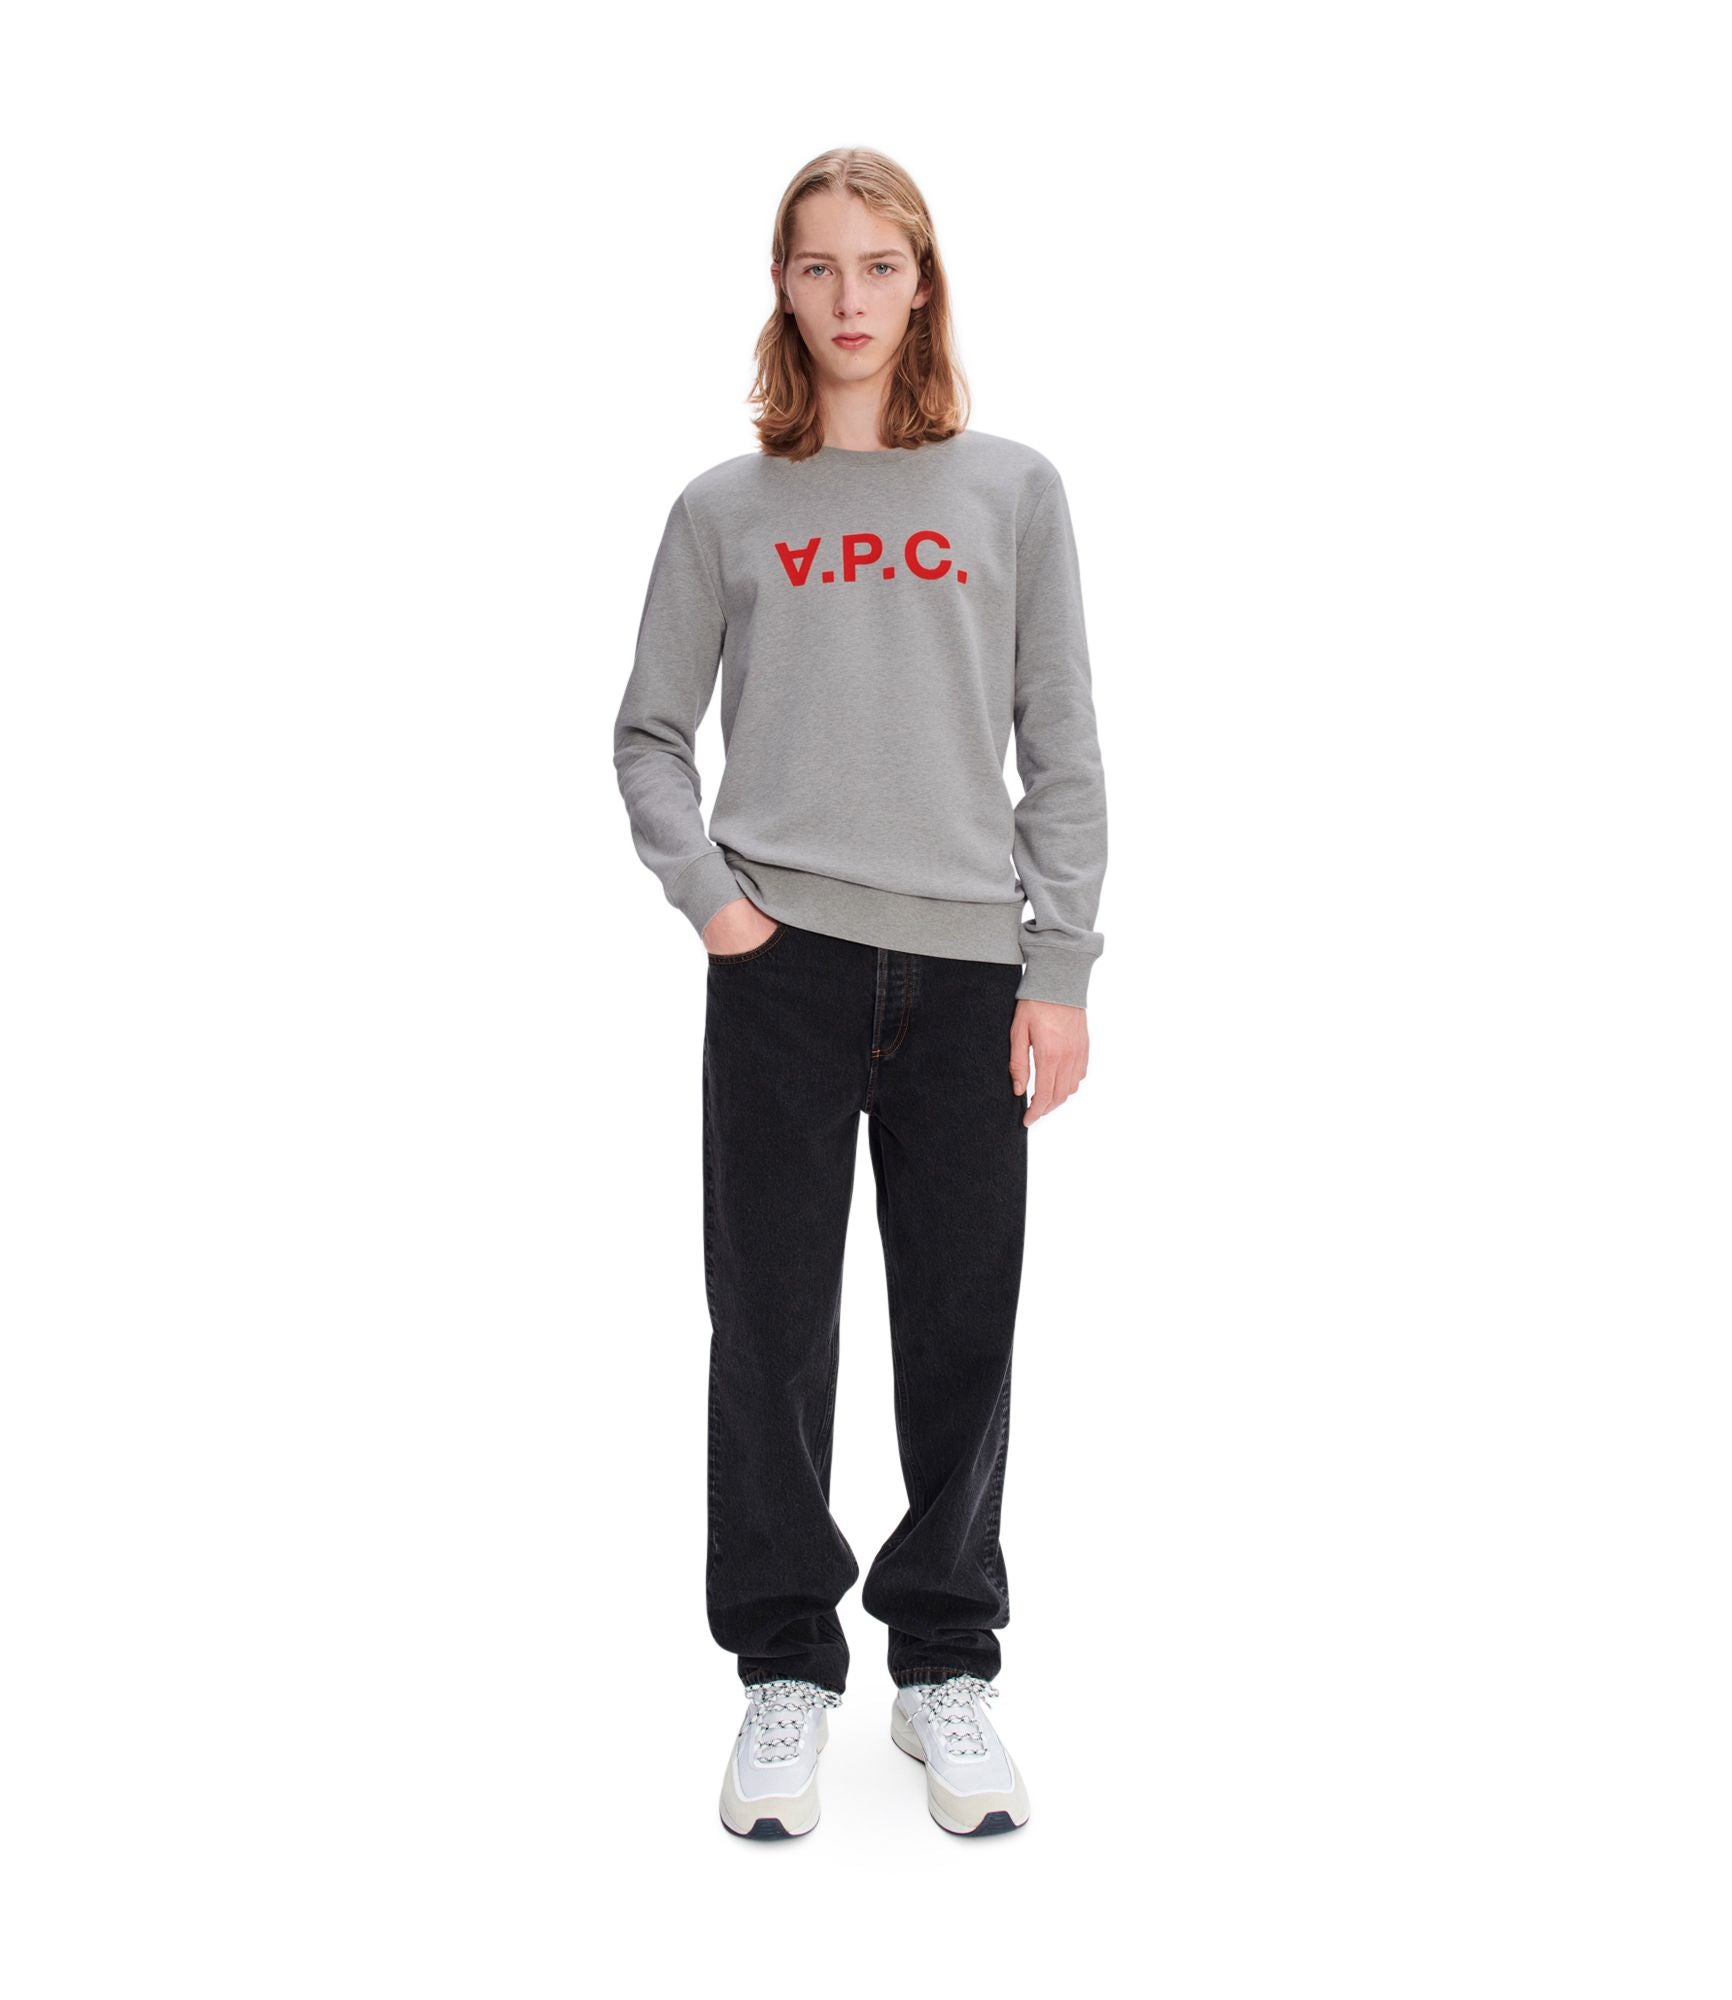 V.P.C. Neon Rouge Sweatshirt